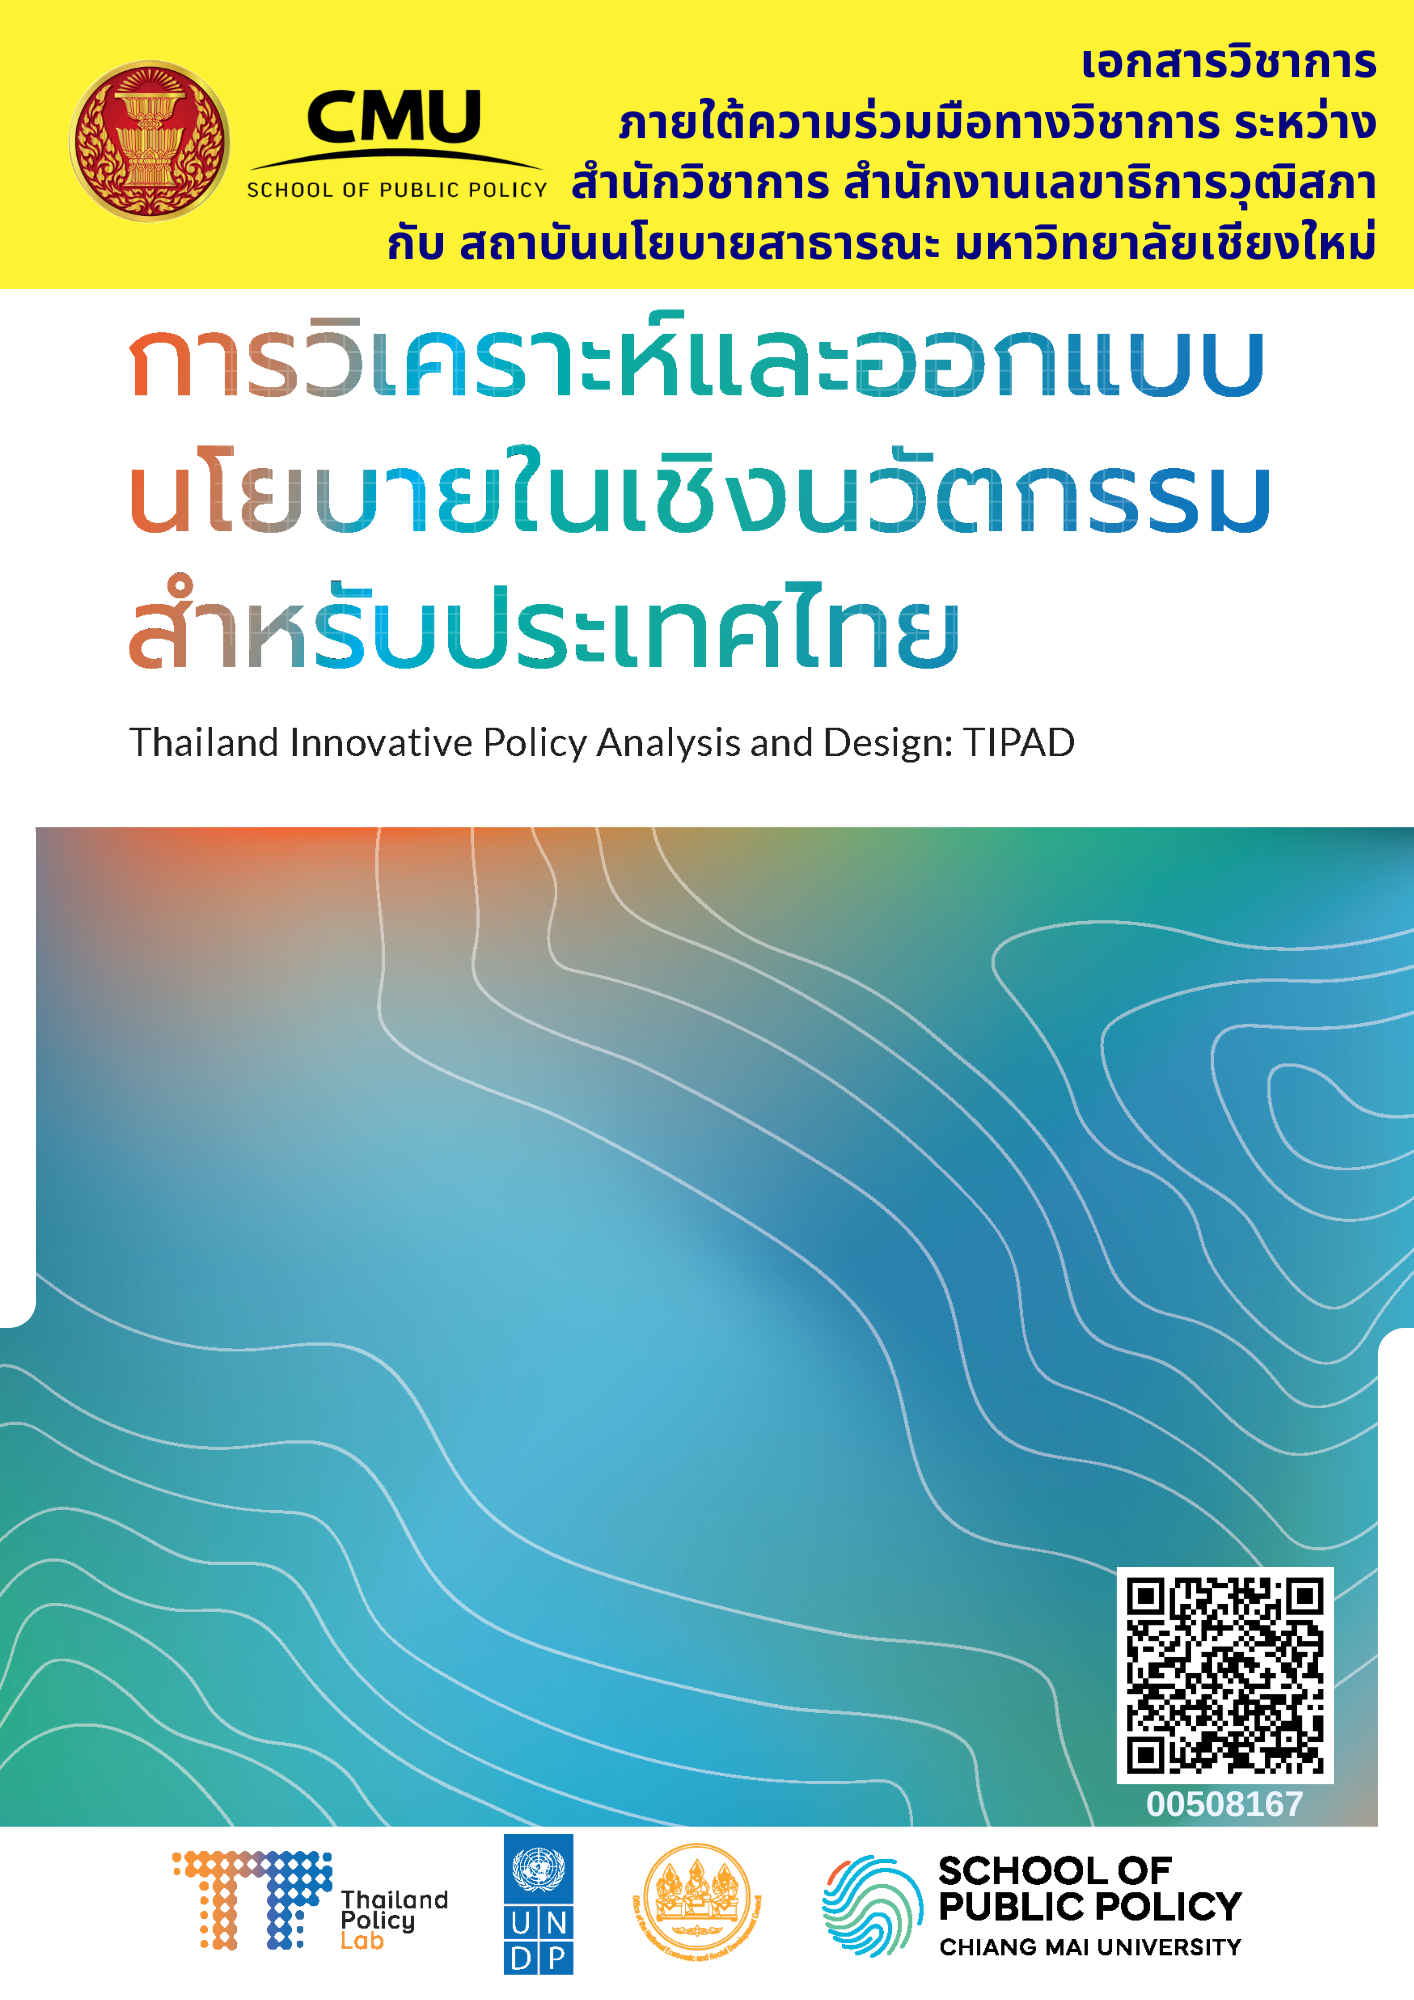 การวิเคราะห์และออกแบบนโยบายในเชิงนวัตกรรมสำหรับประเทศไทย